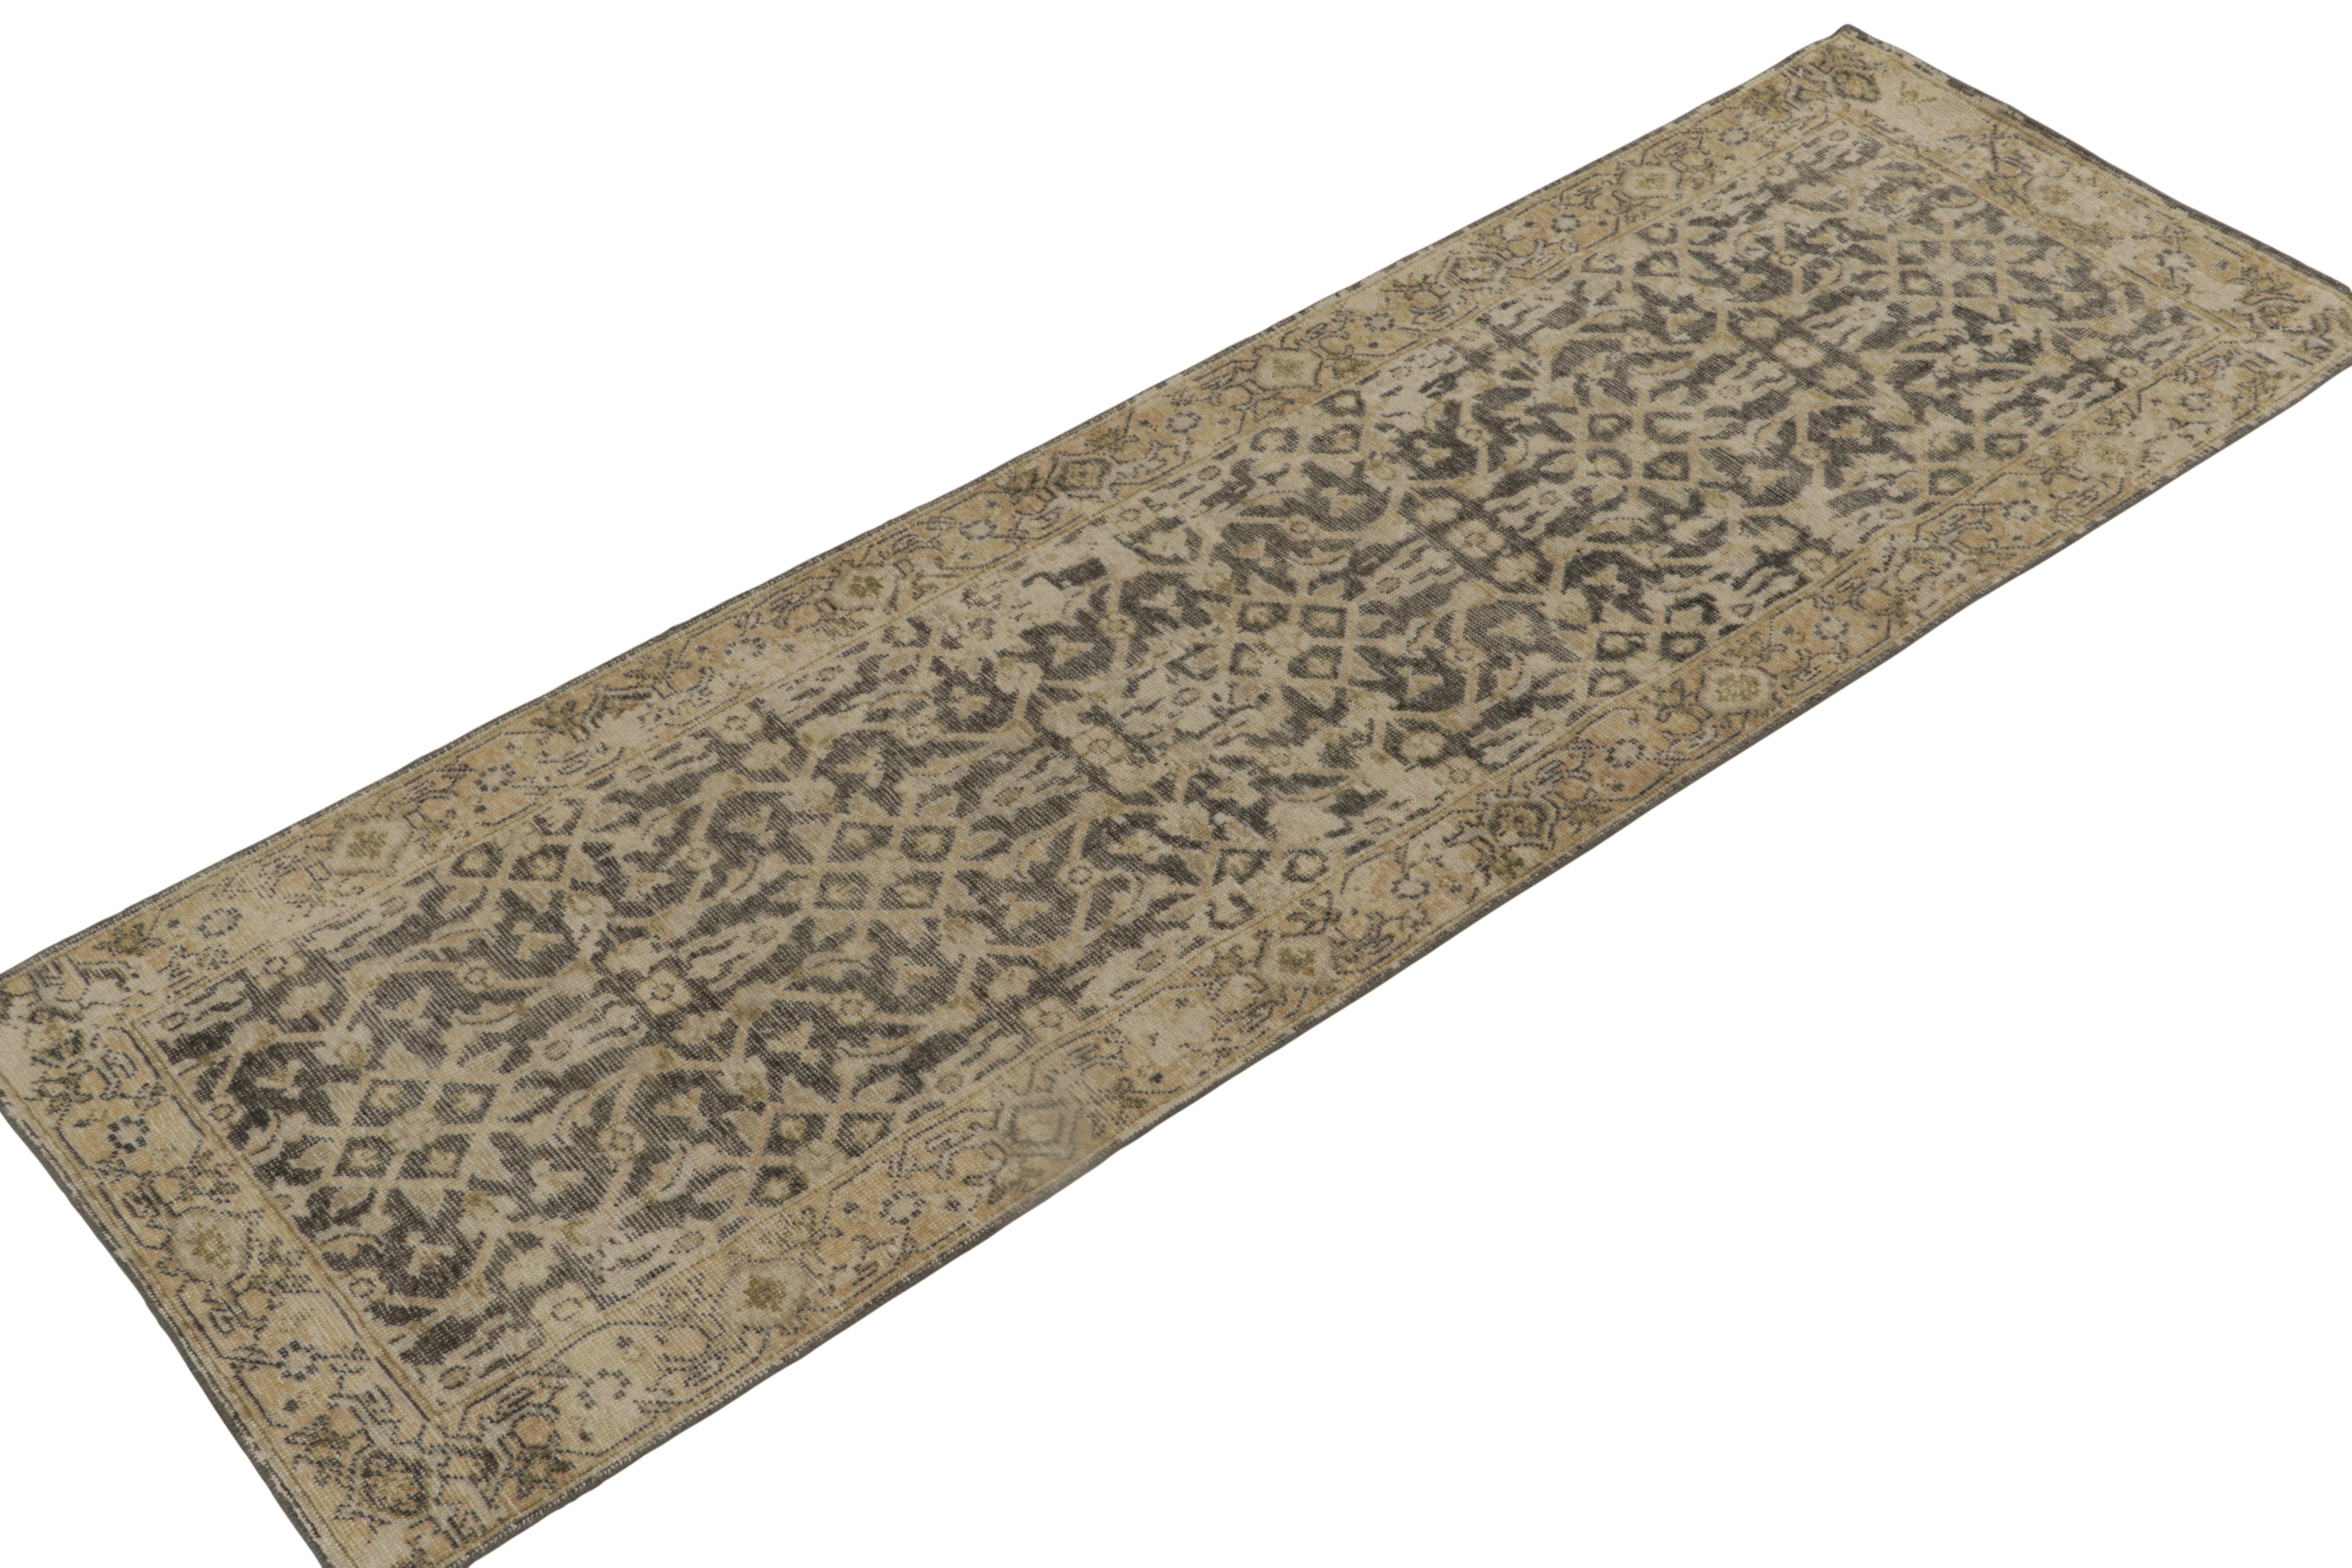 De la collection encyclopédique Homage de Rug & Kilim, un tapis 3x10 en laine nouée à la main, inspiré des tapis persans anciens du 19ème siècle. 

Sur le design : On retrouve l'échelle magnifique et l'air royal des motifs Herati les plus